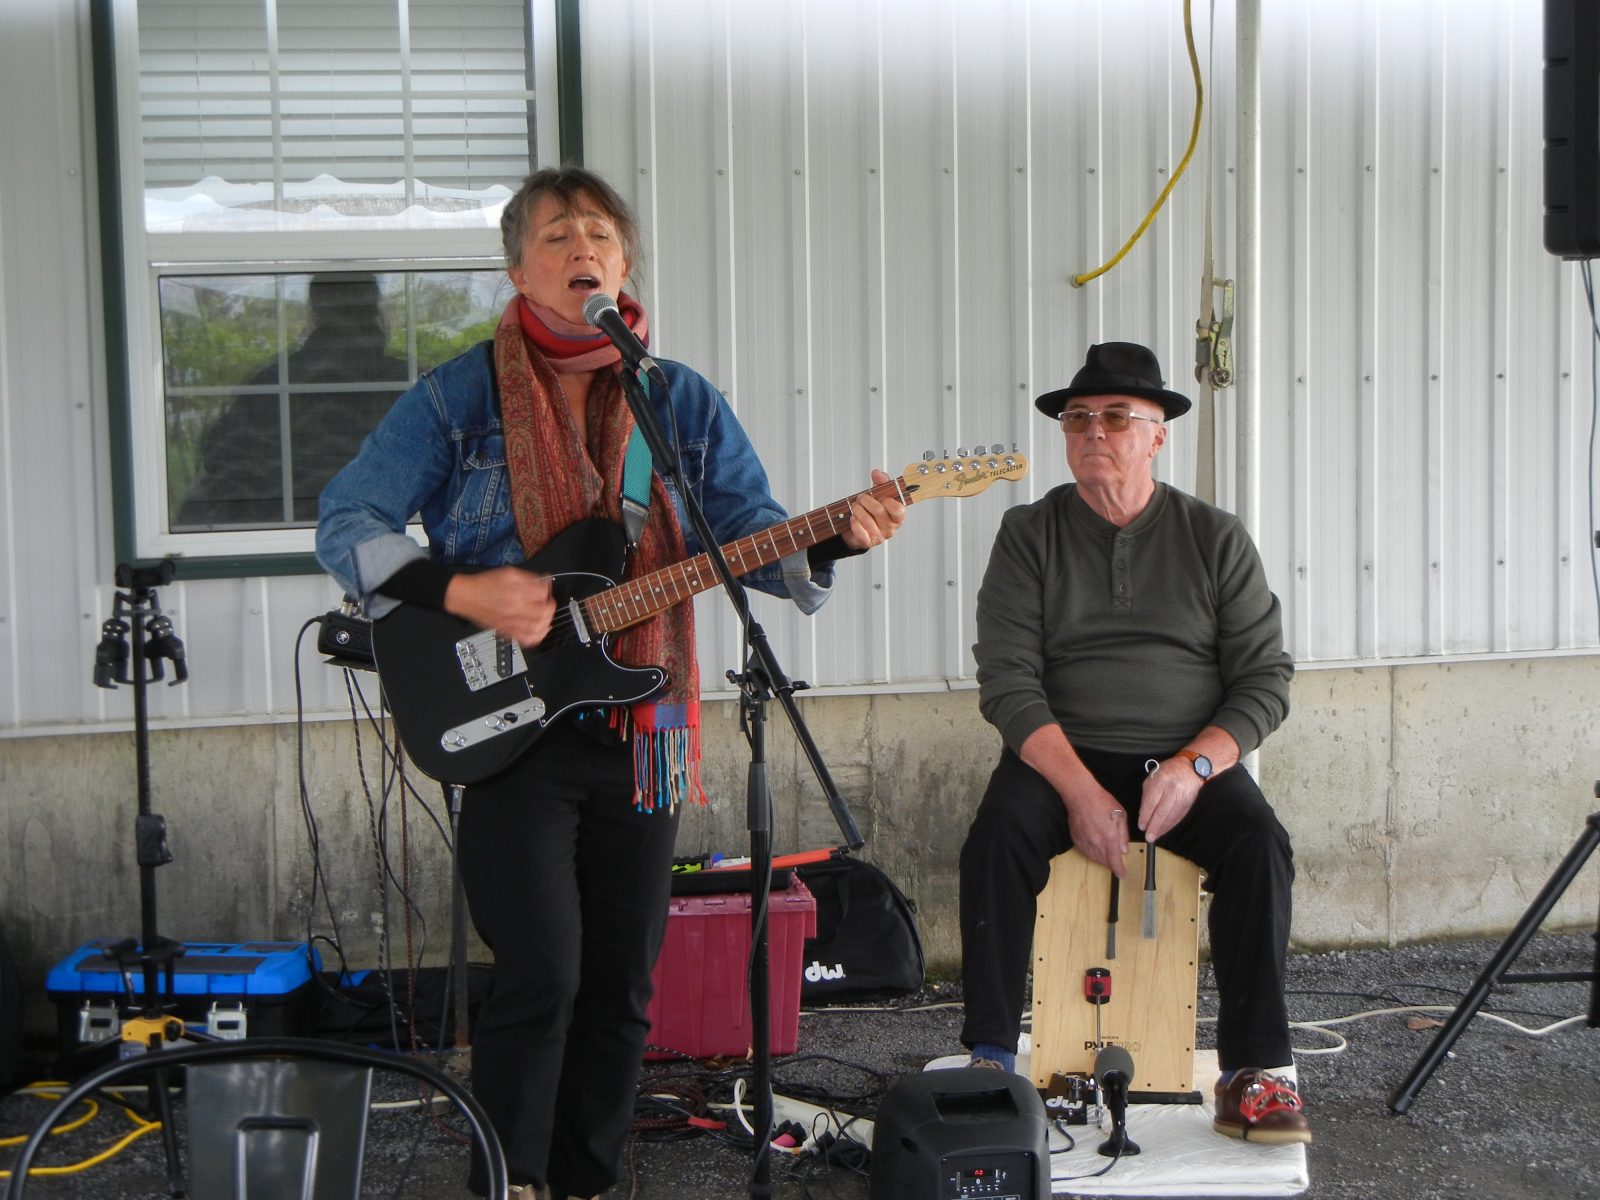 Karen Morand performs in Vankleek Hill